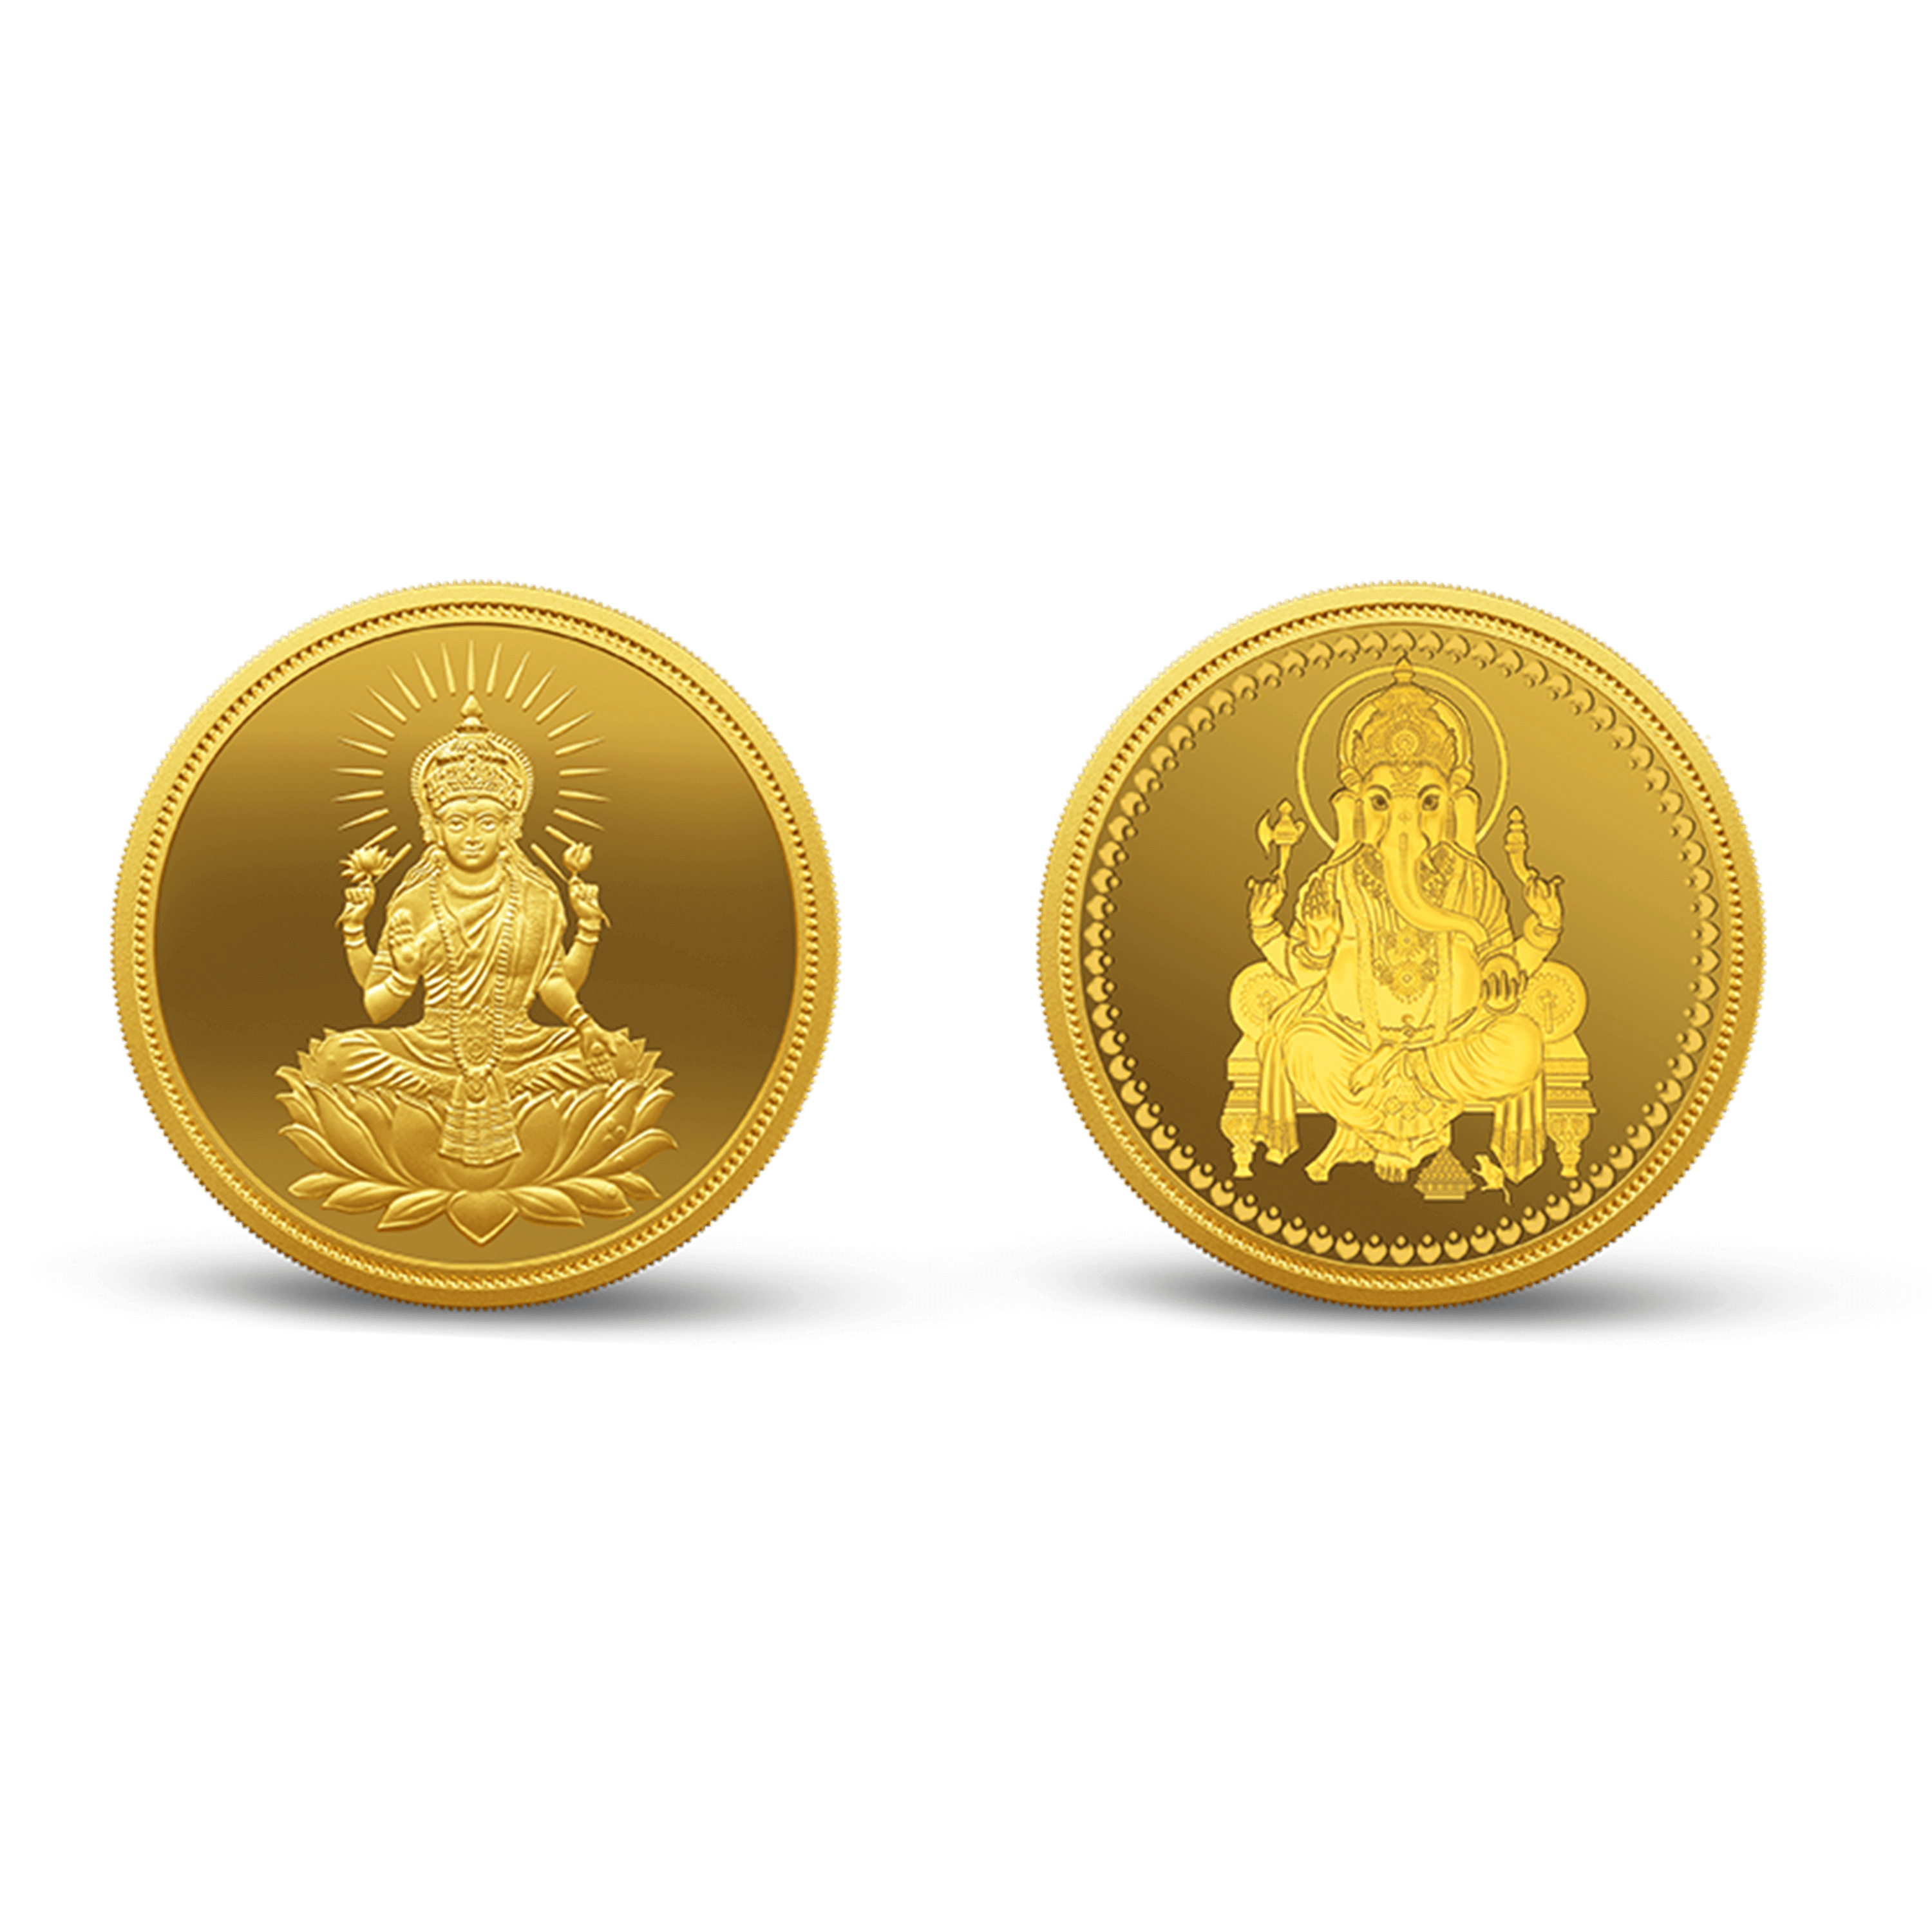 Lakshmi Ganesh 24k (999.9) 4 gm Gold Coin (2 coin set)